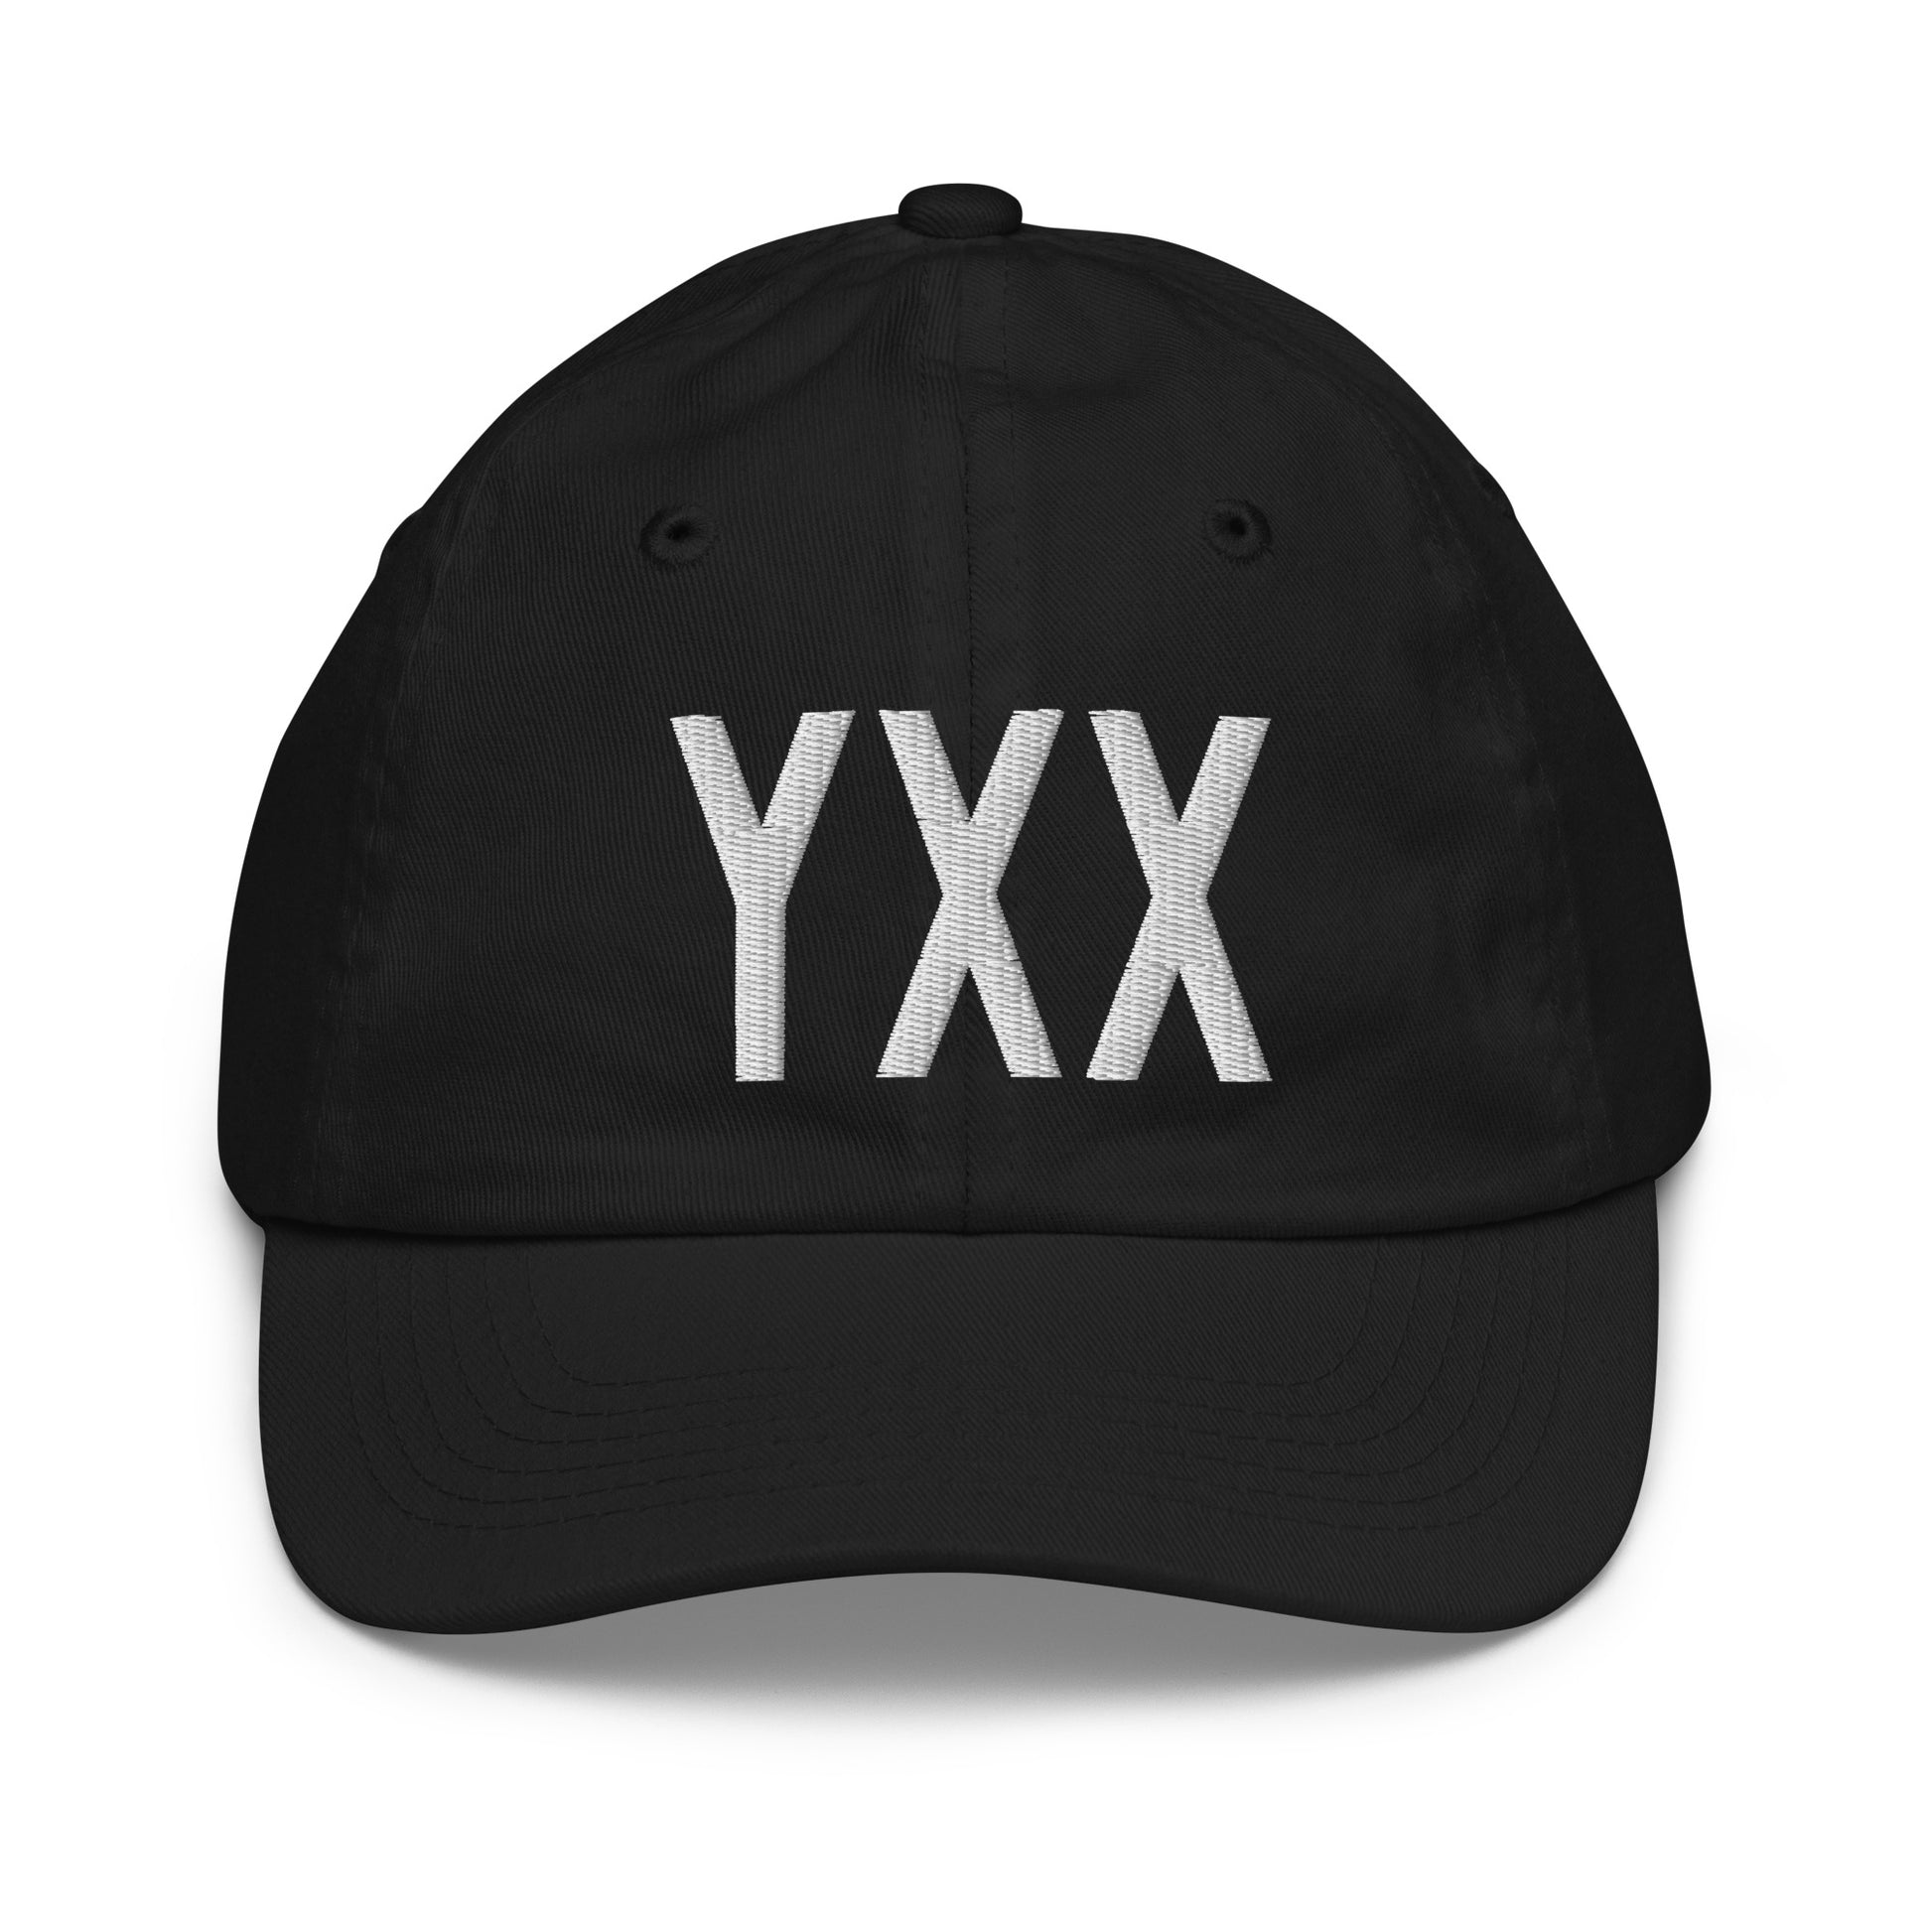 Airport Code Kid's Baseball Cap - White • YXX Abbotsford • YHM Designs - Image 11